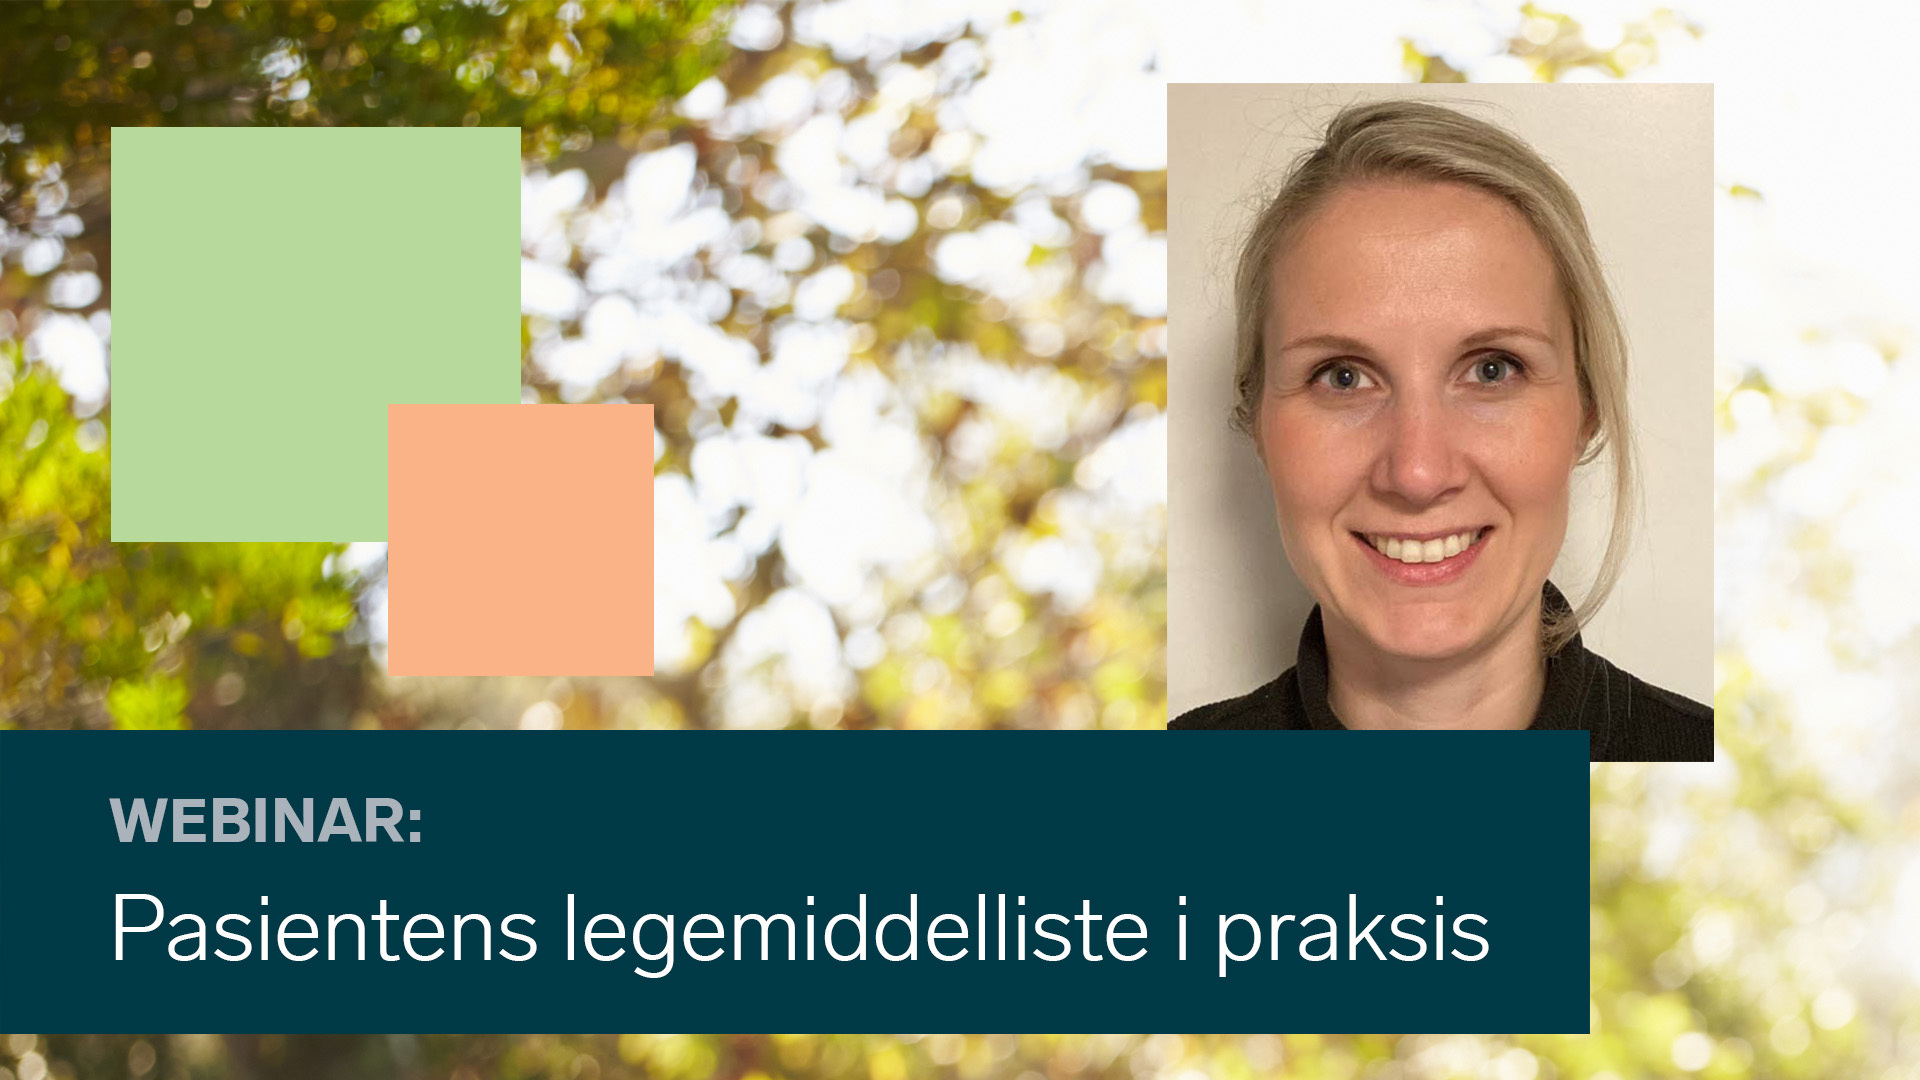 Katinka Alme leder arbeidsgruppen for «Pasientens legemiddelliste» (PLL) ved Haraldsplass diakonale sykehus i Bergen.